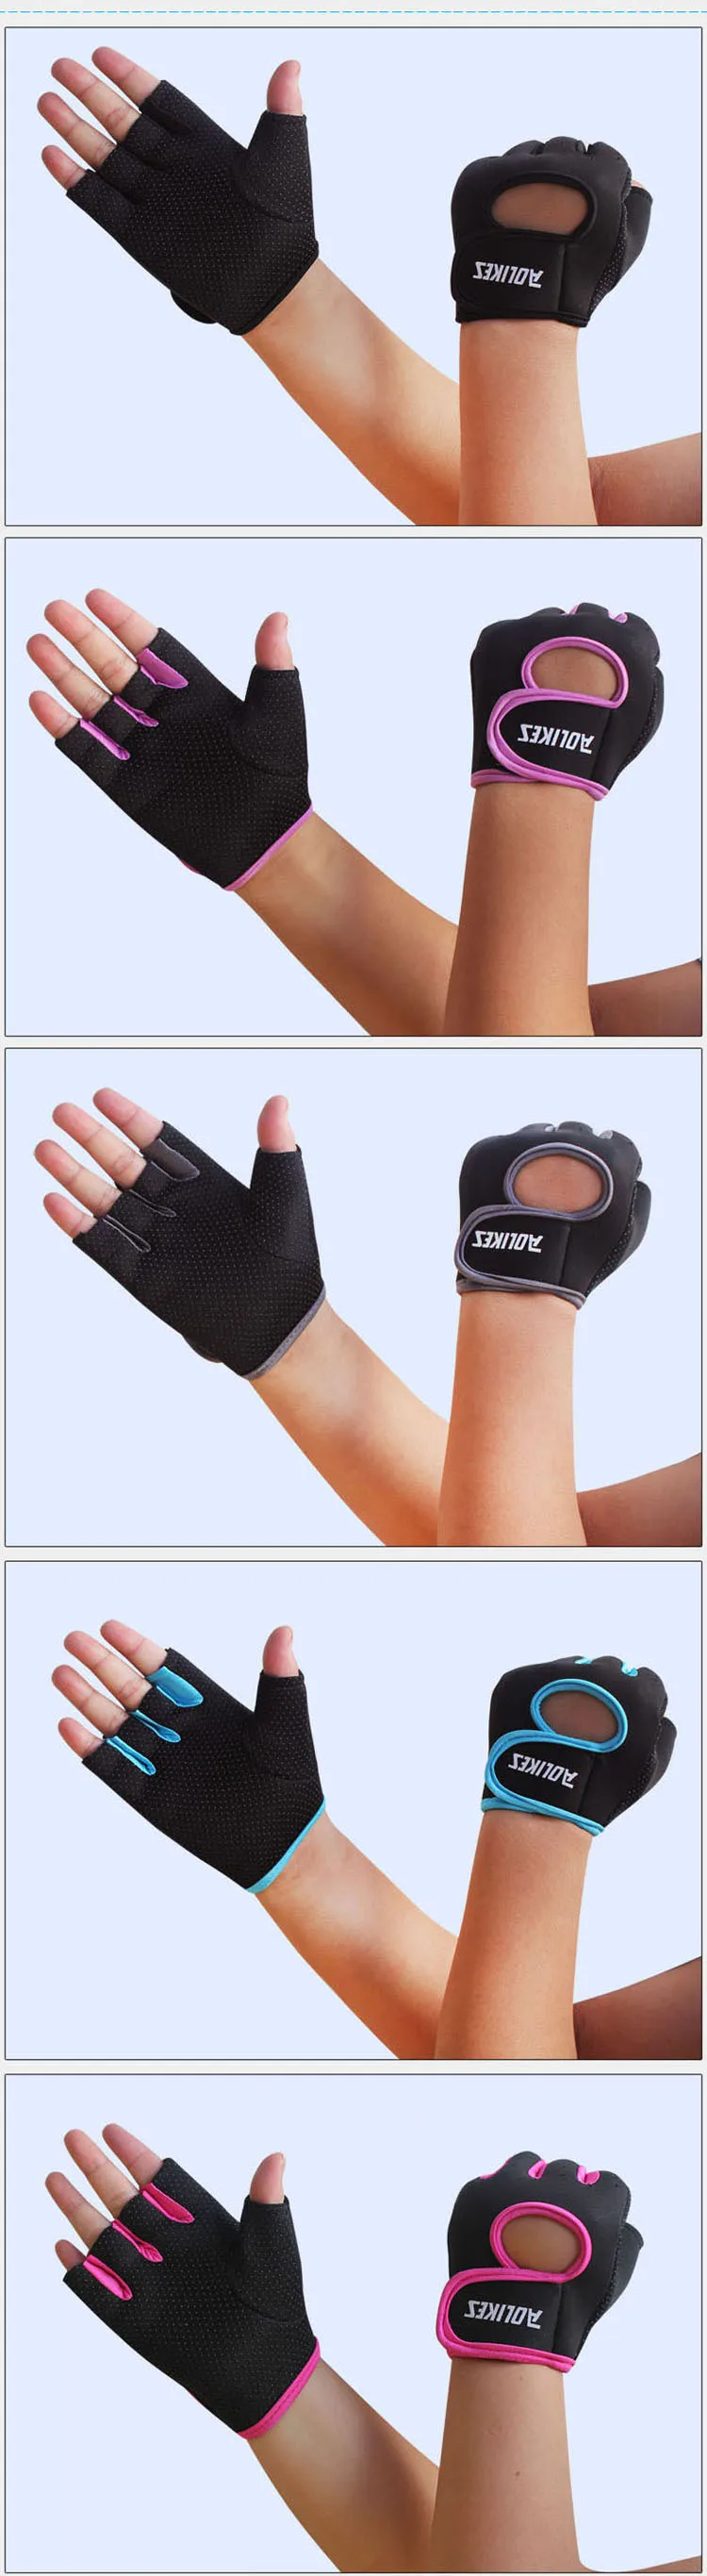 ALBREDA 1 пара высококачественных многоцветных спортивных перчаток фитнес тренировки скольжения половина пальцев перчатки для мужчин и женщин спортивная безопасность